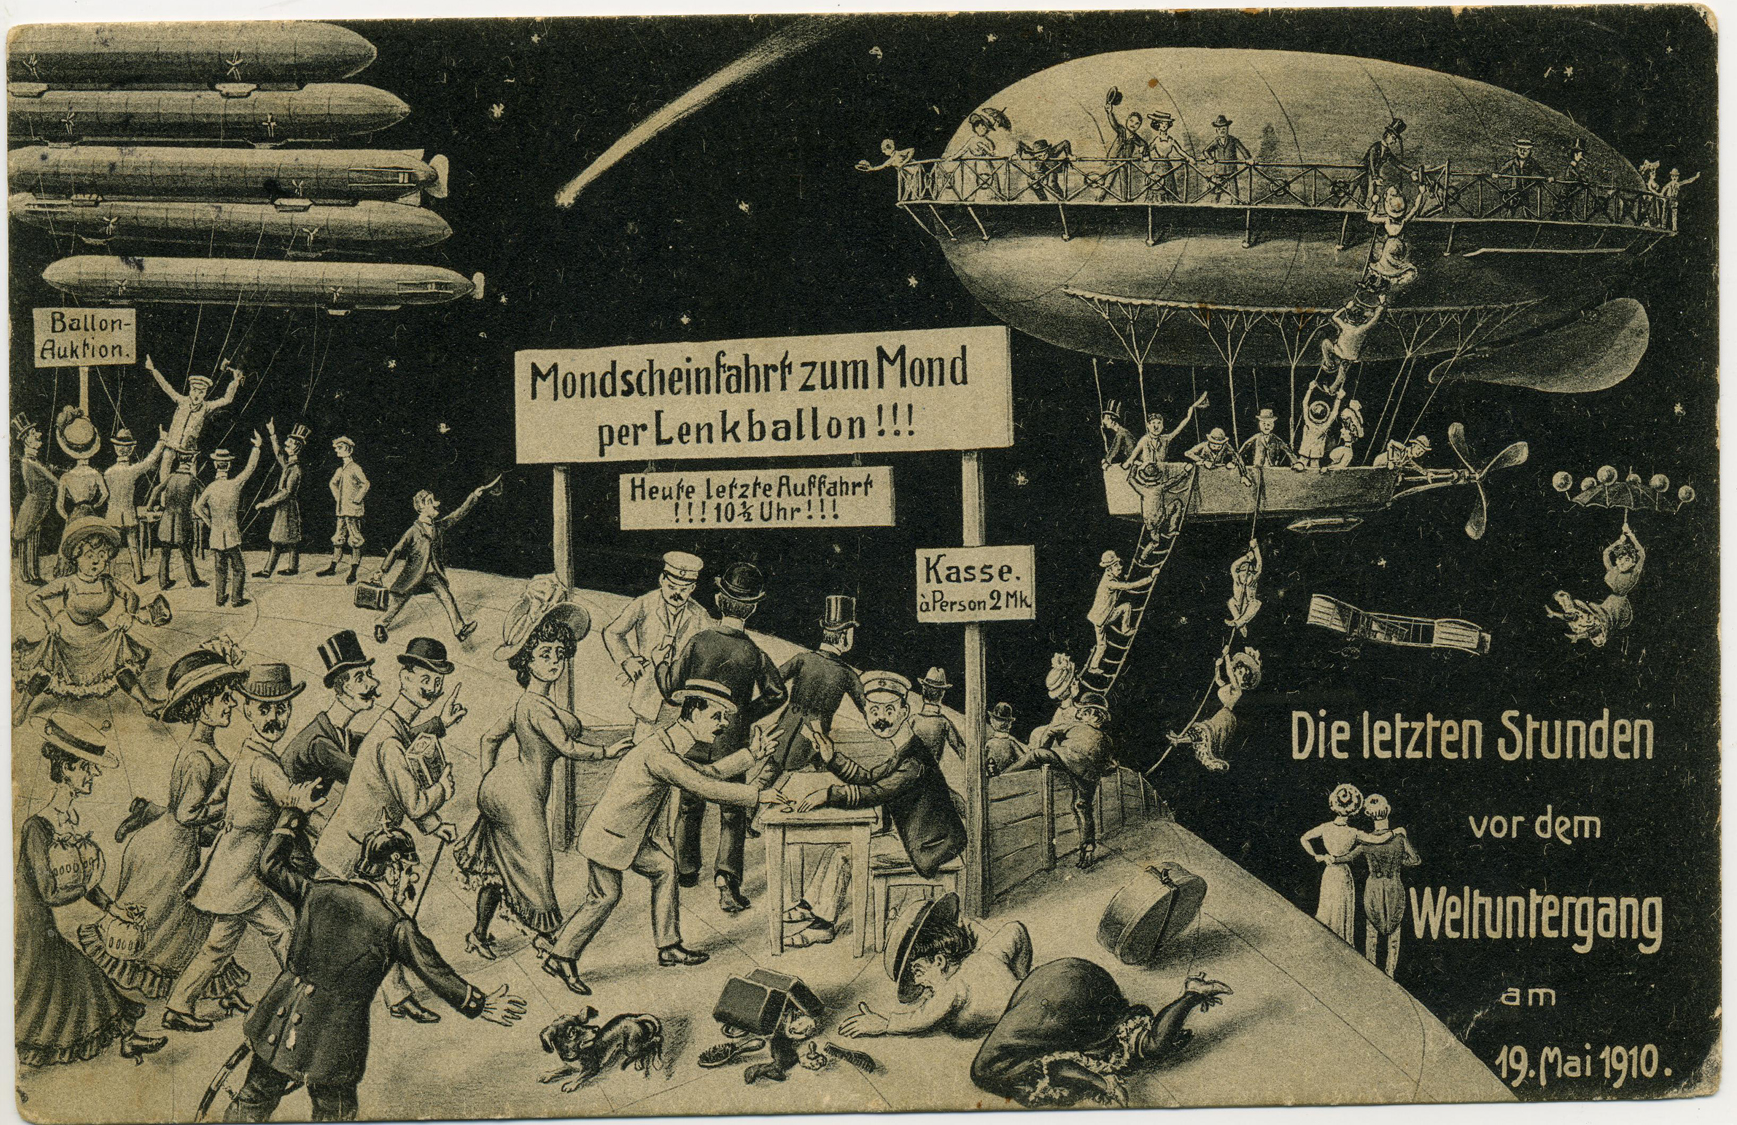 Postkarte: "Die letzten Stunden vor dem Weltuntergang am 19. Mai 1910", 1910